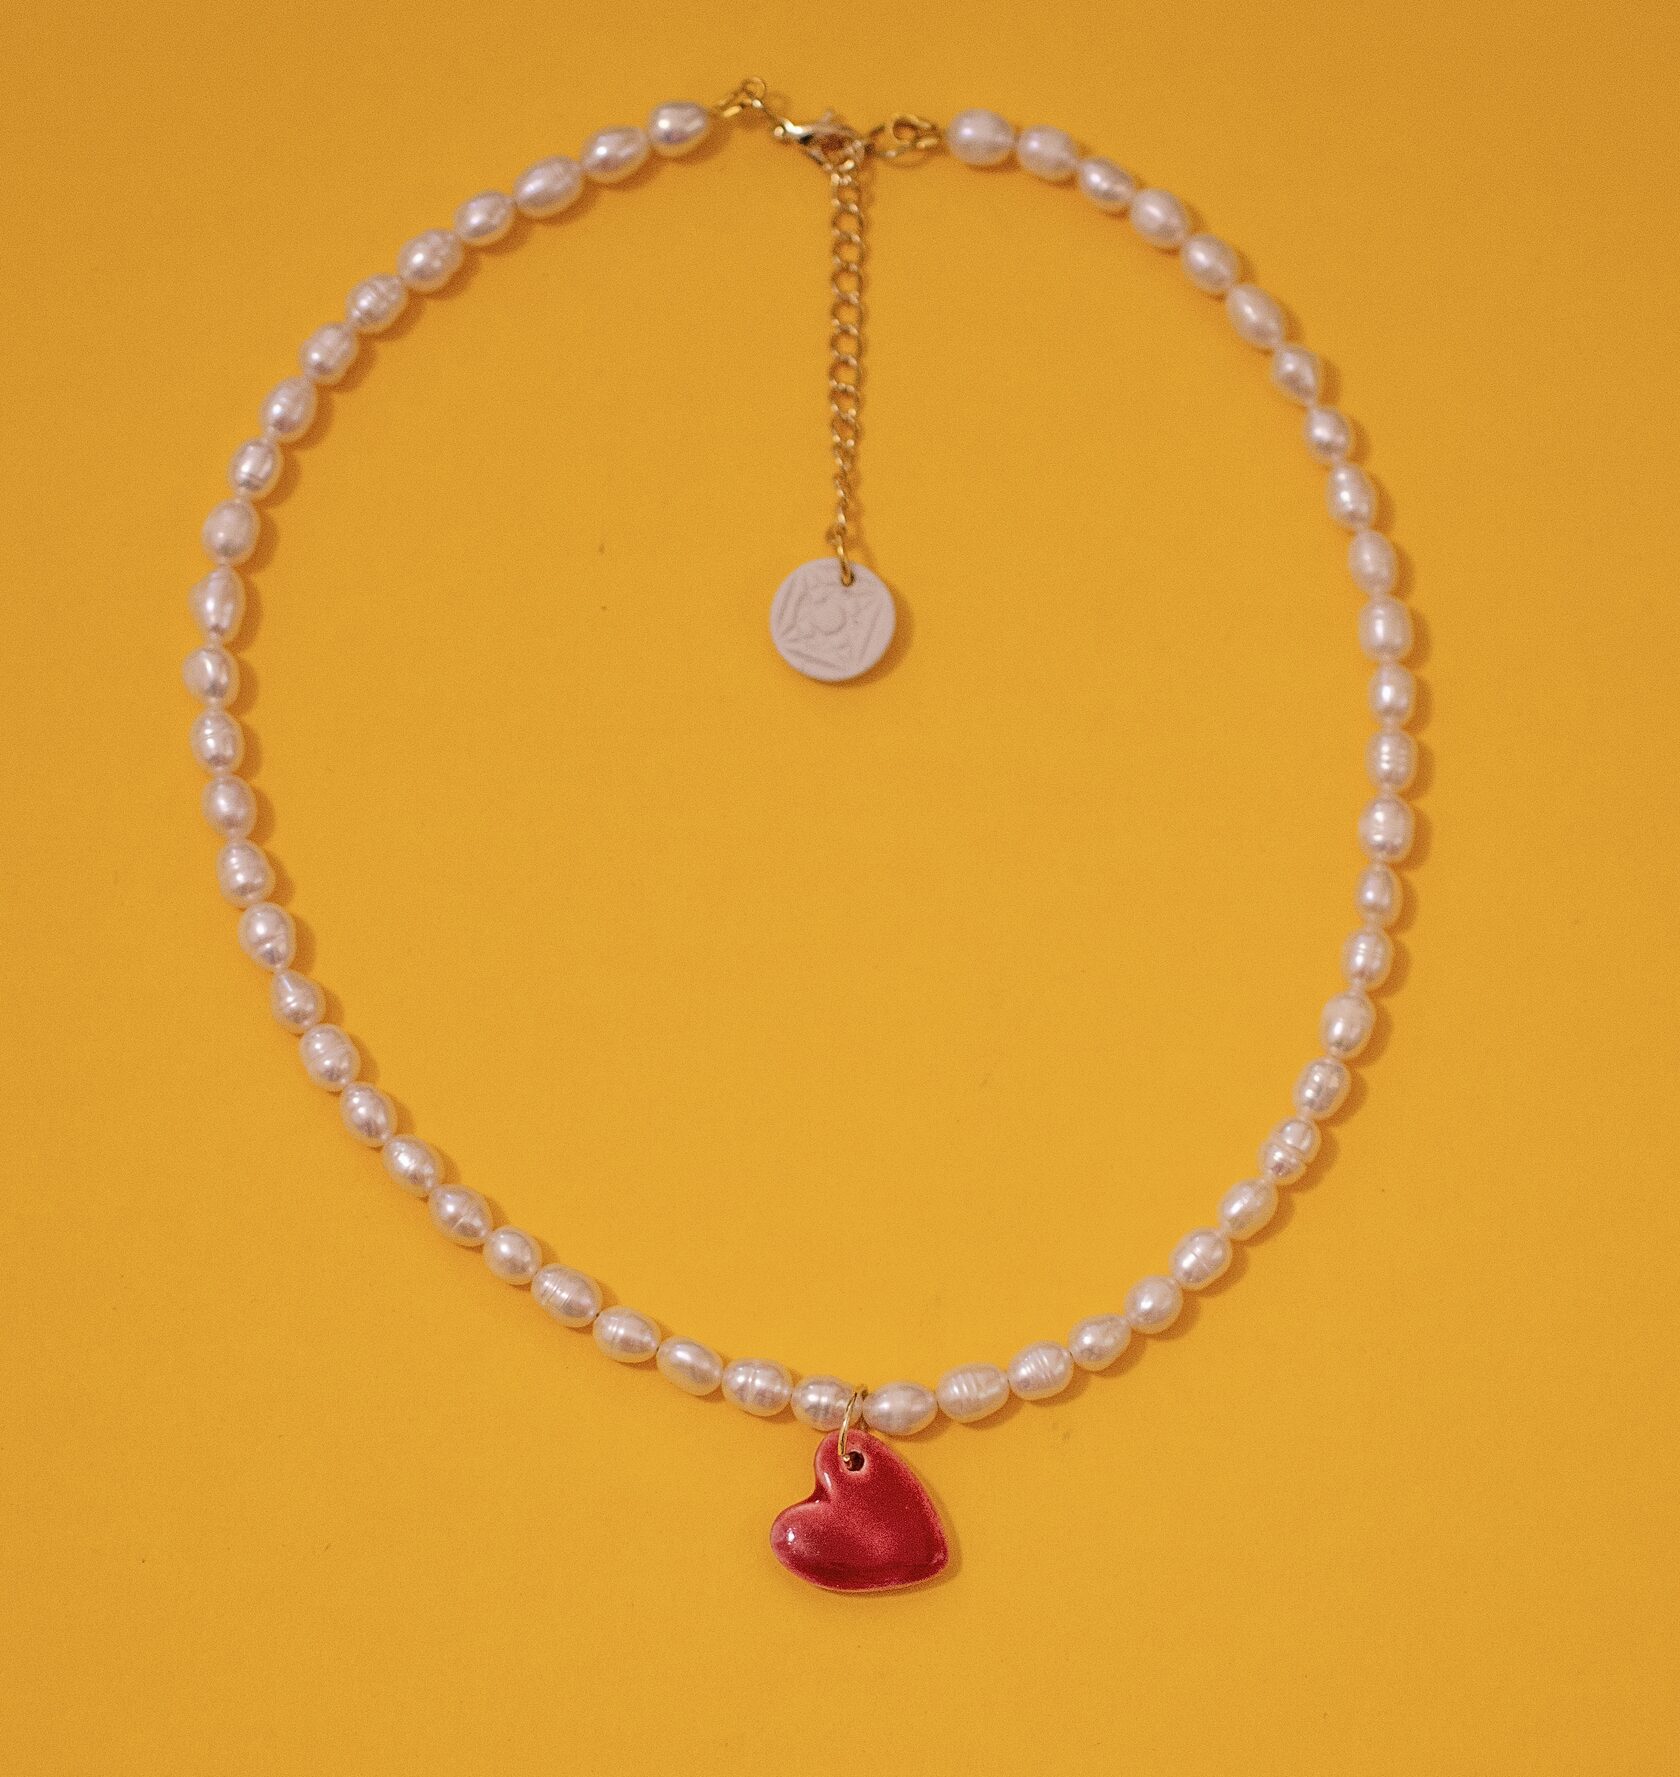 жемчужное ожерелье на шею с подвеской сердце красное, чокер из жемчуга с сердечком, украшение на шею cosmicbead